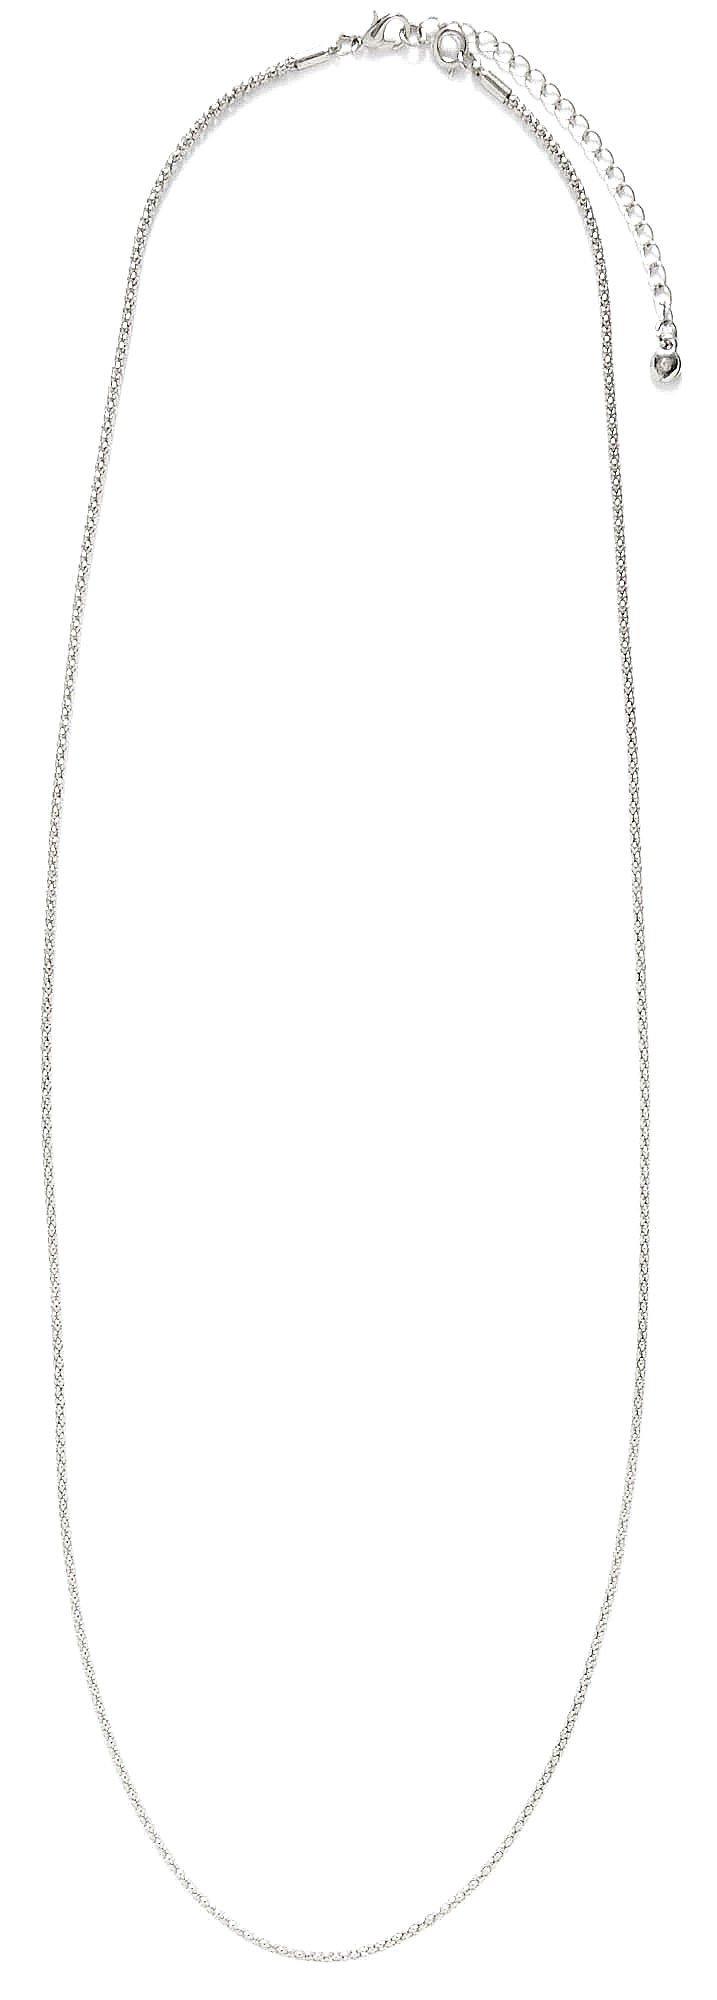 By Roman Silvertone Long Lantern Chain Necklace